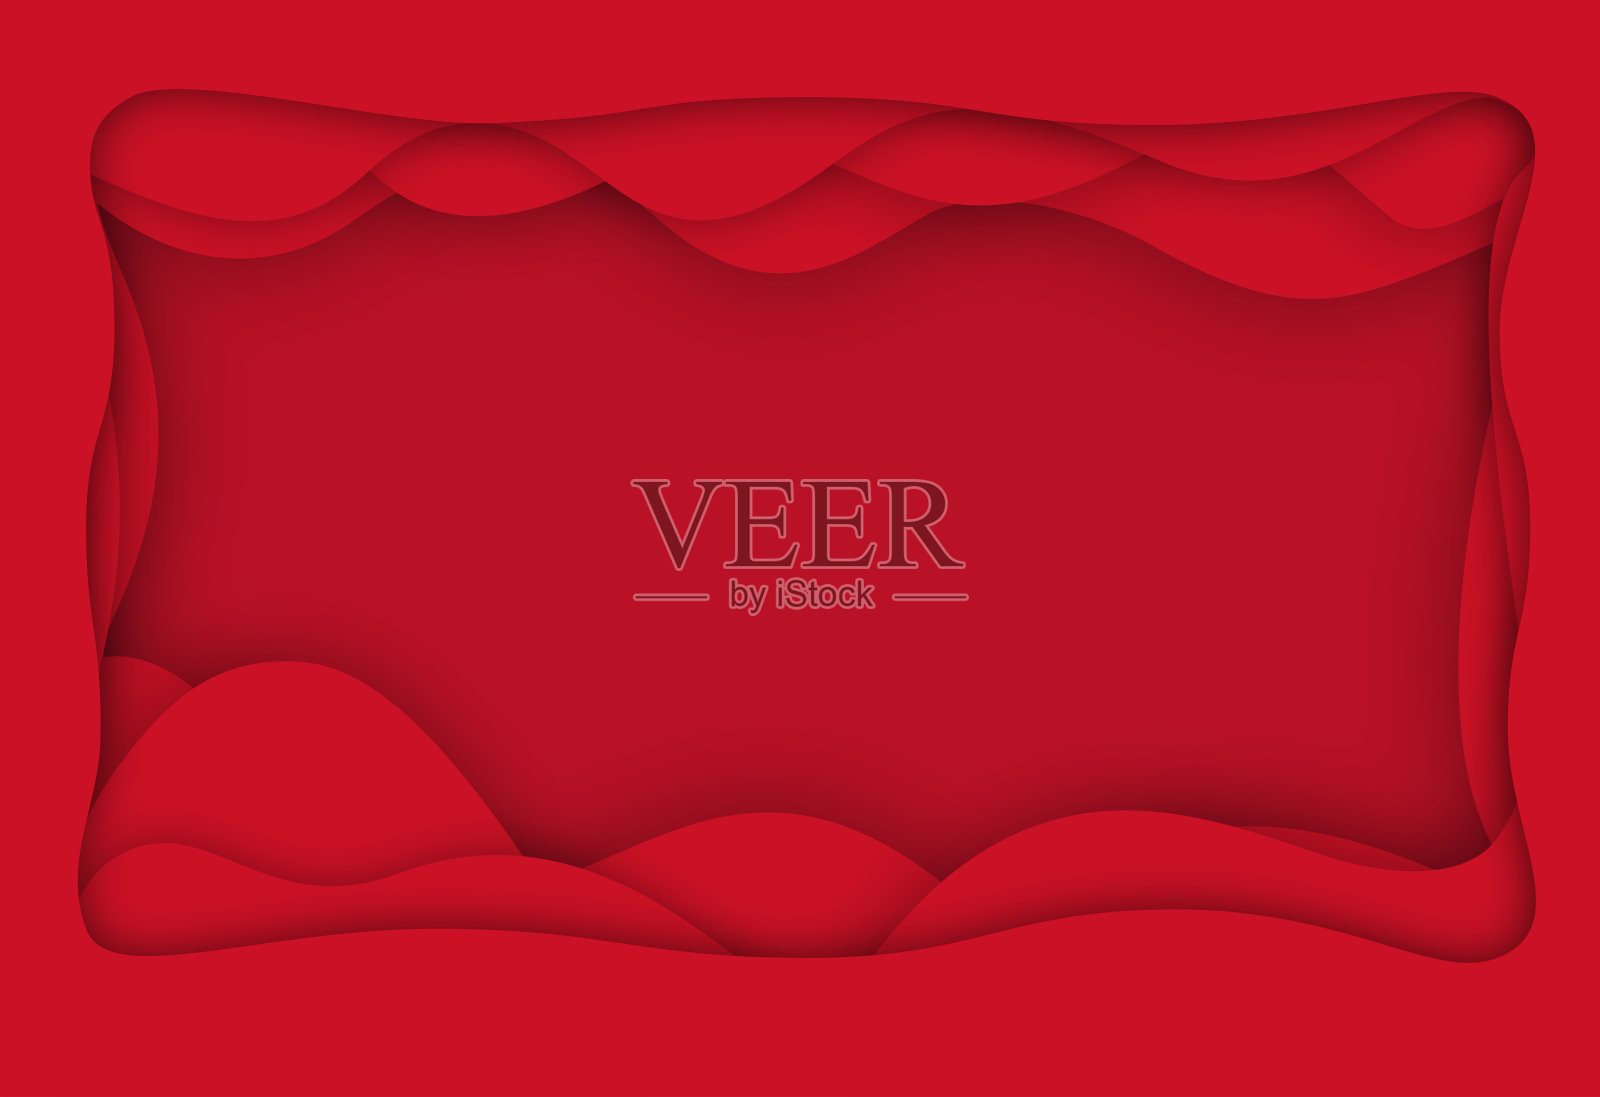 中国风格的红色剪纸背景材料插画图片素材